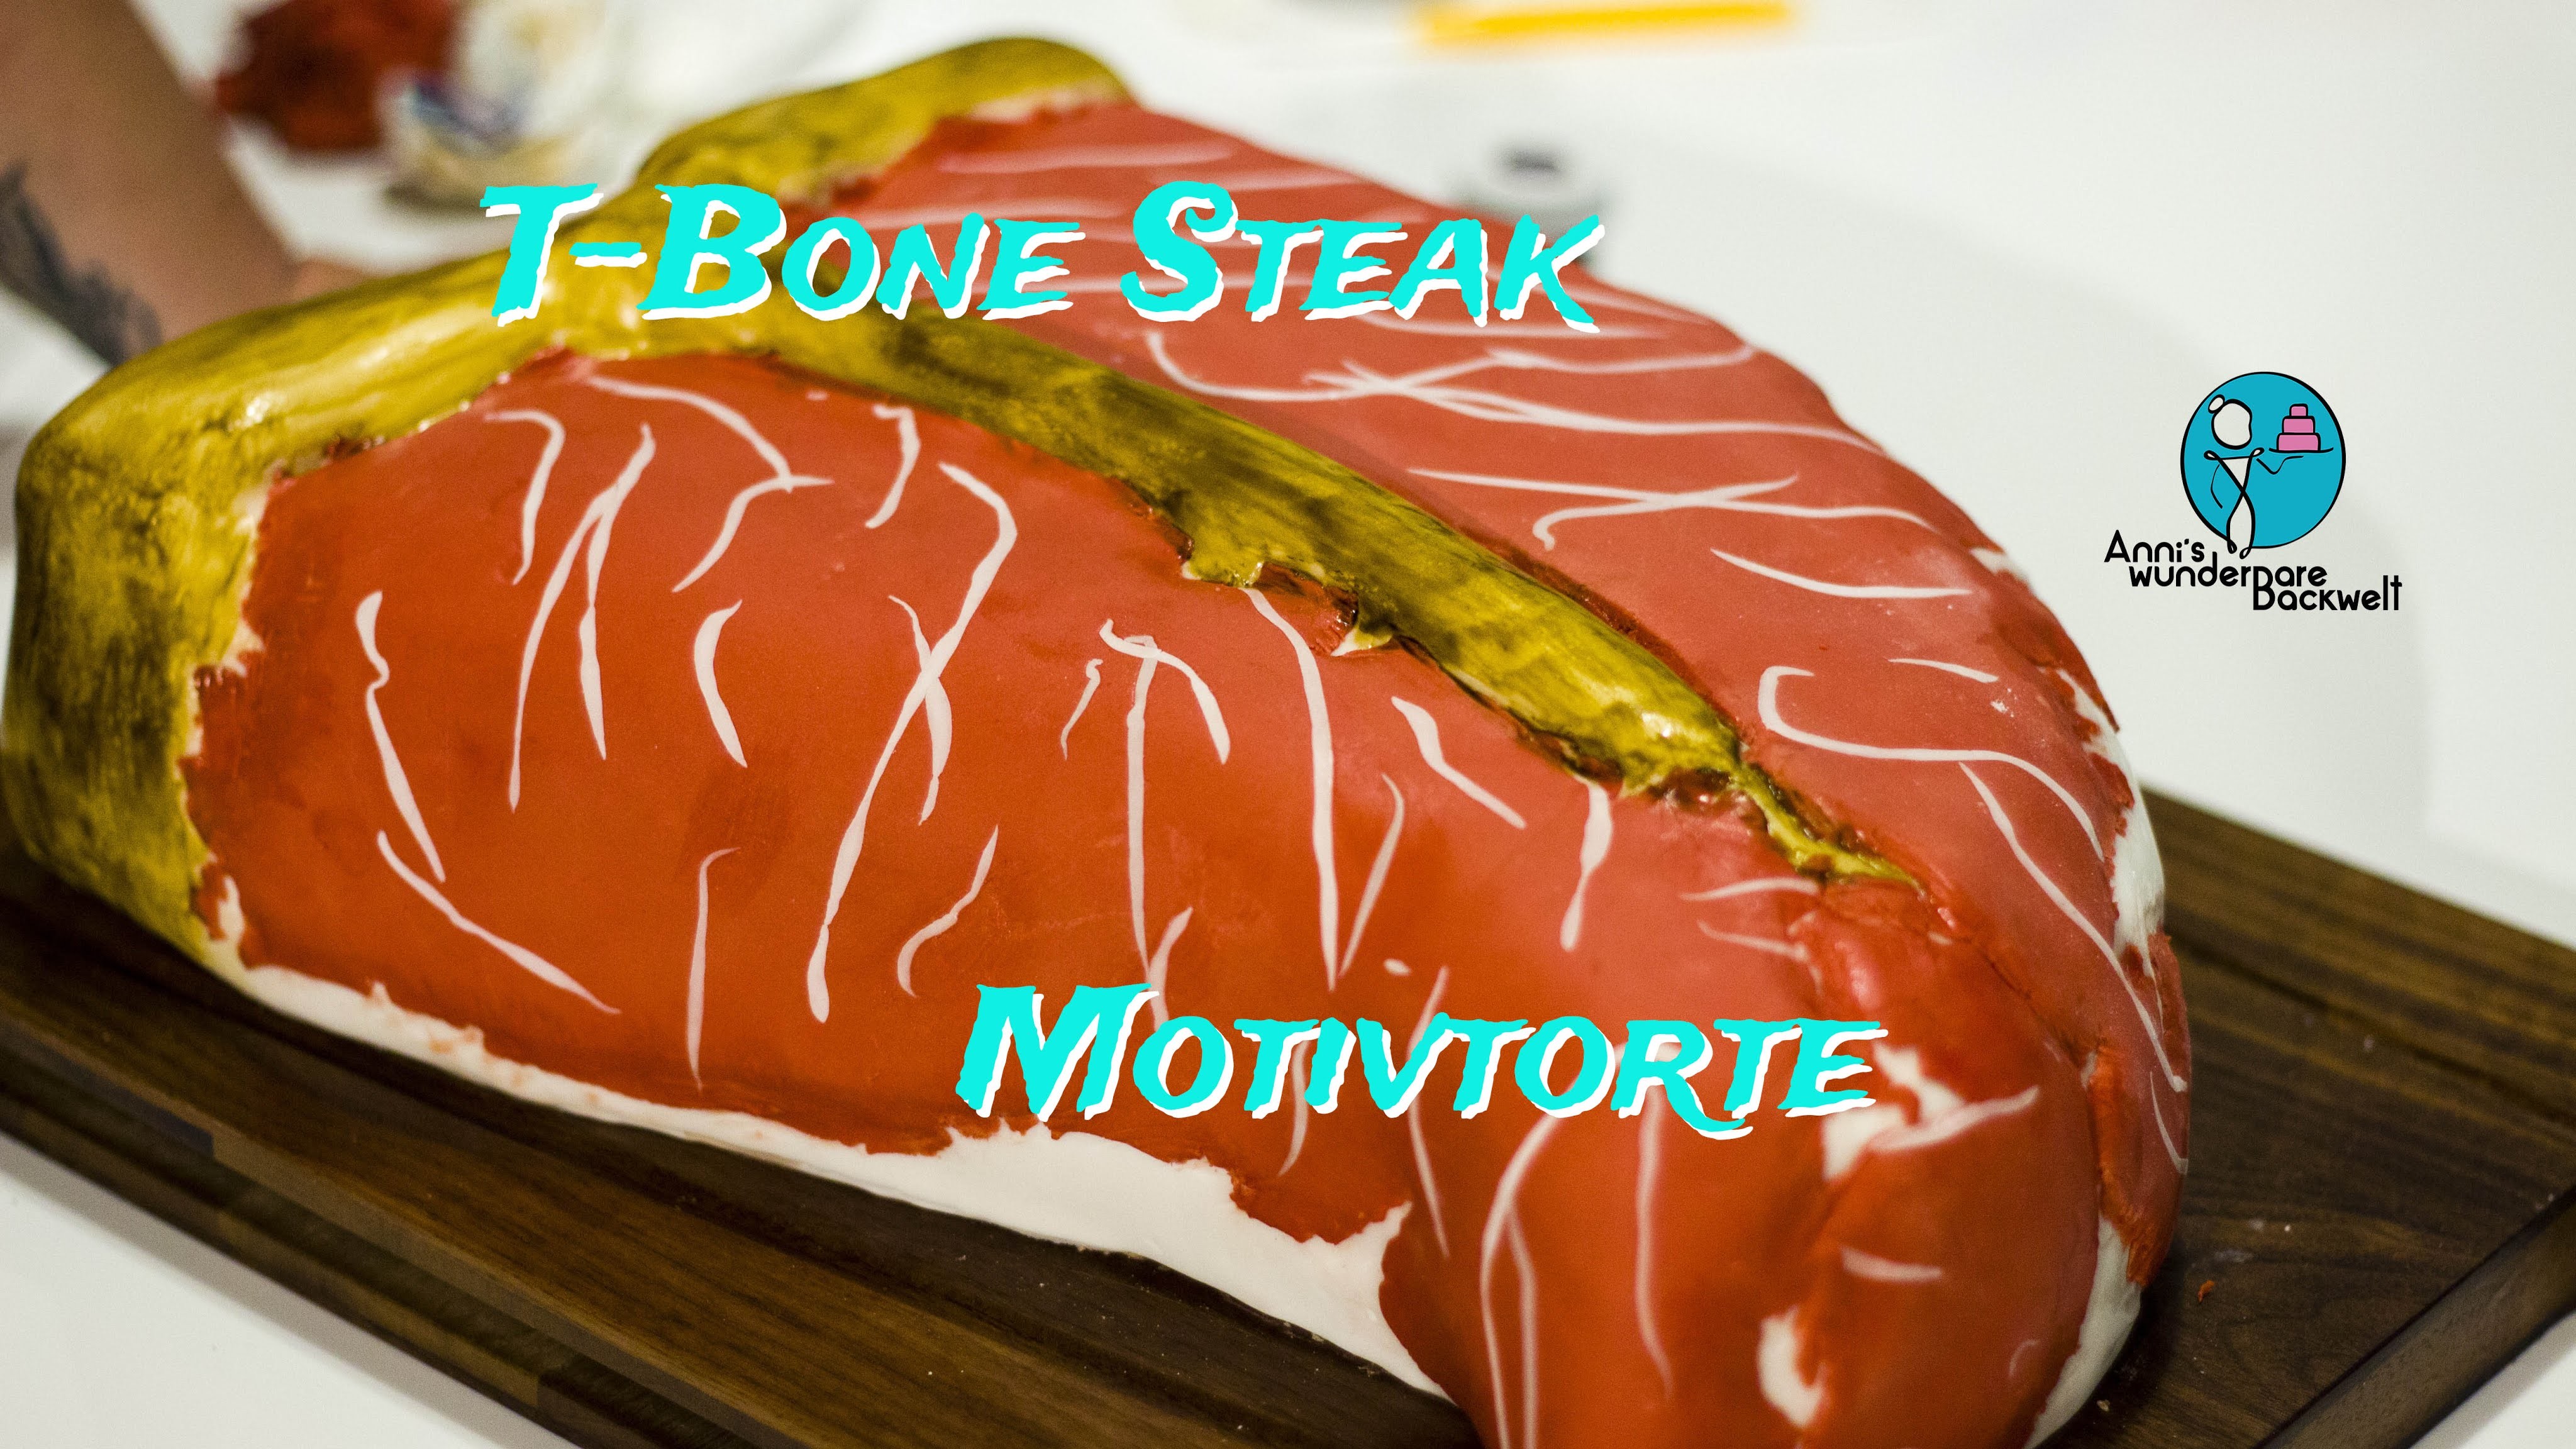 Steak Motivtorte - T-Bone Steak Cake - [how to]